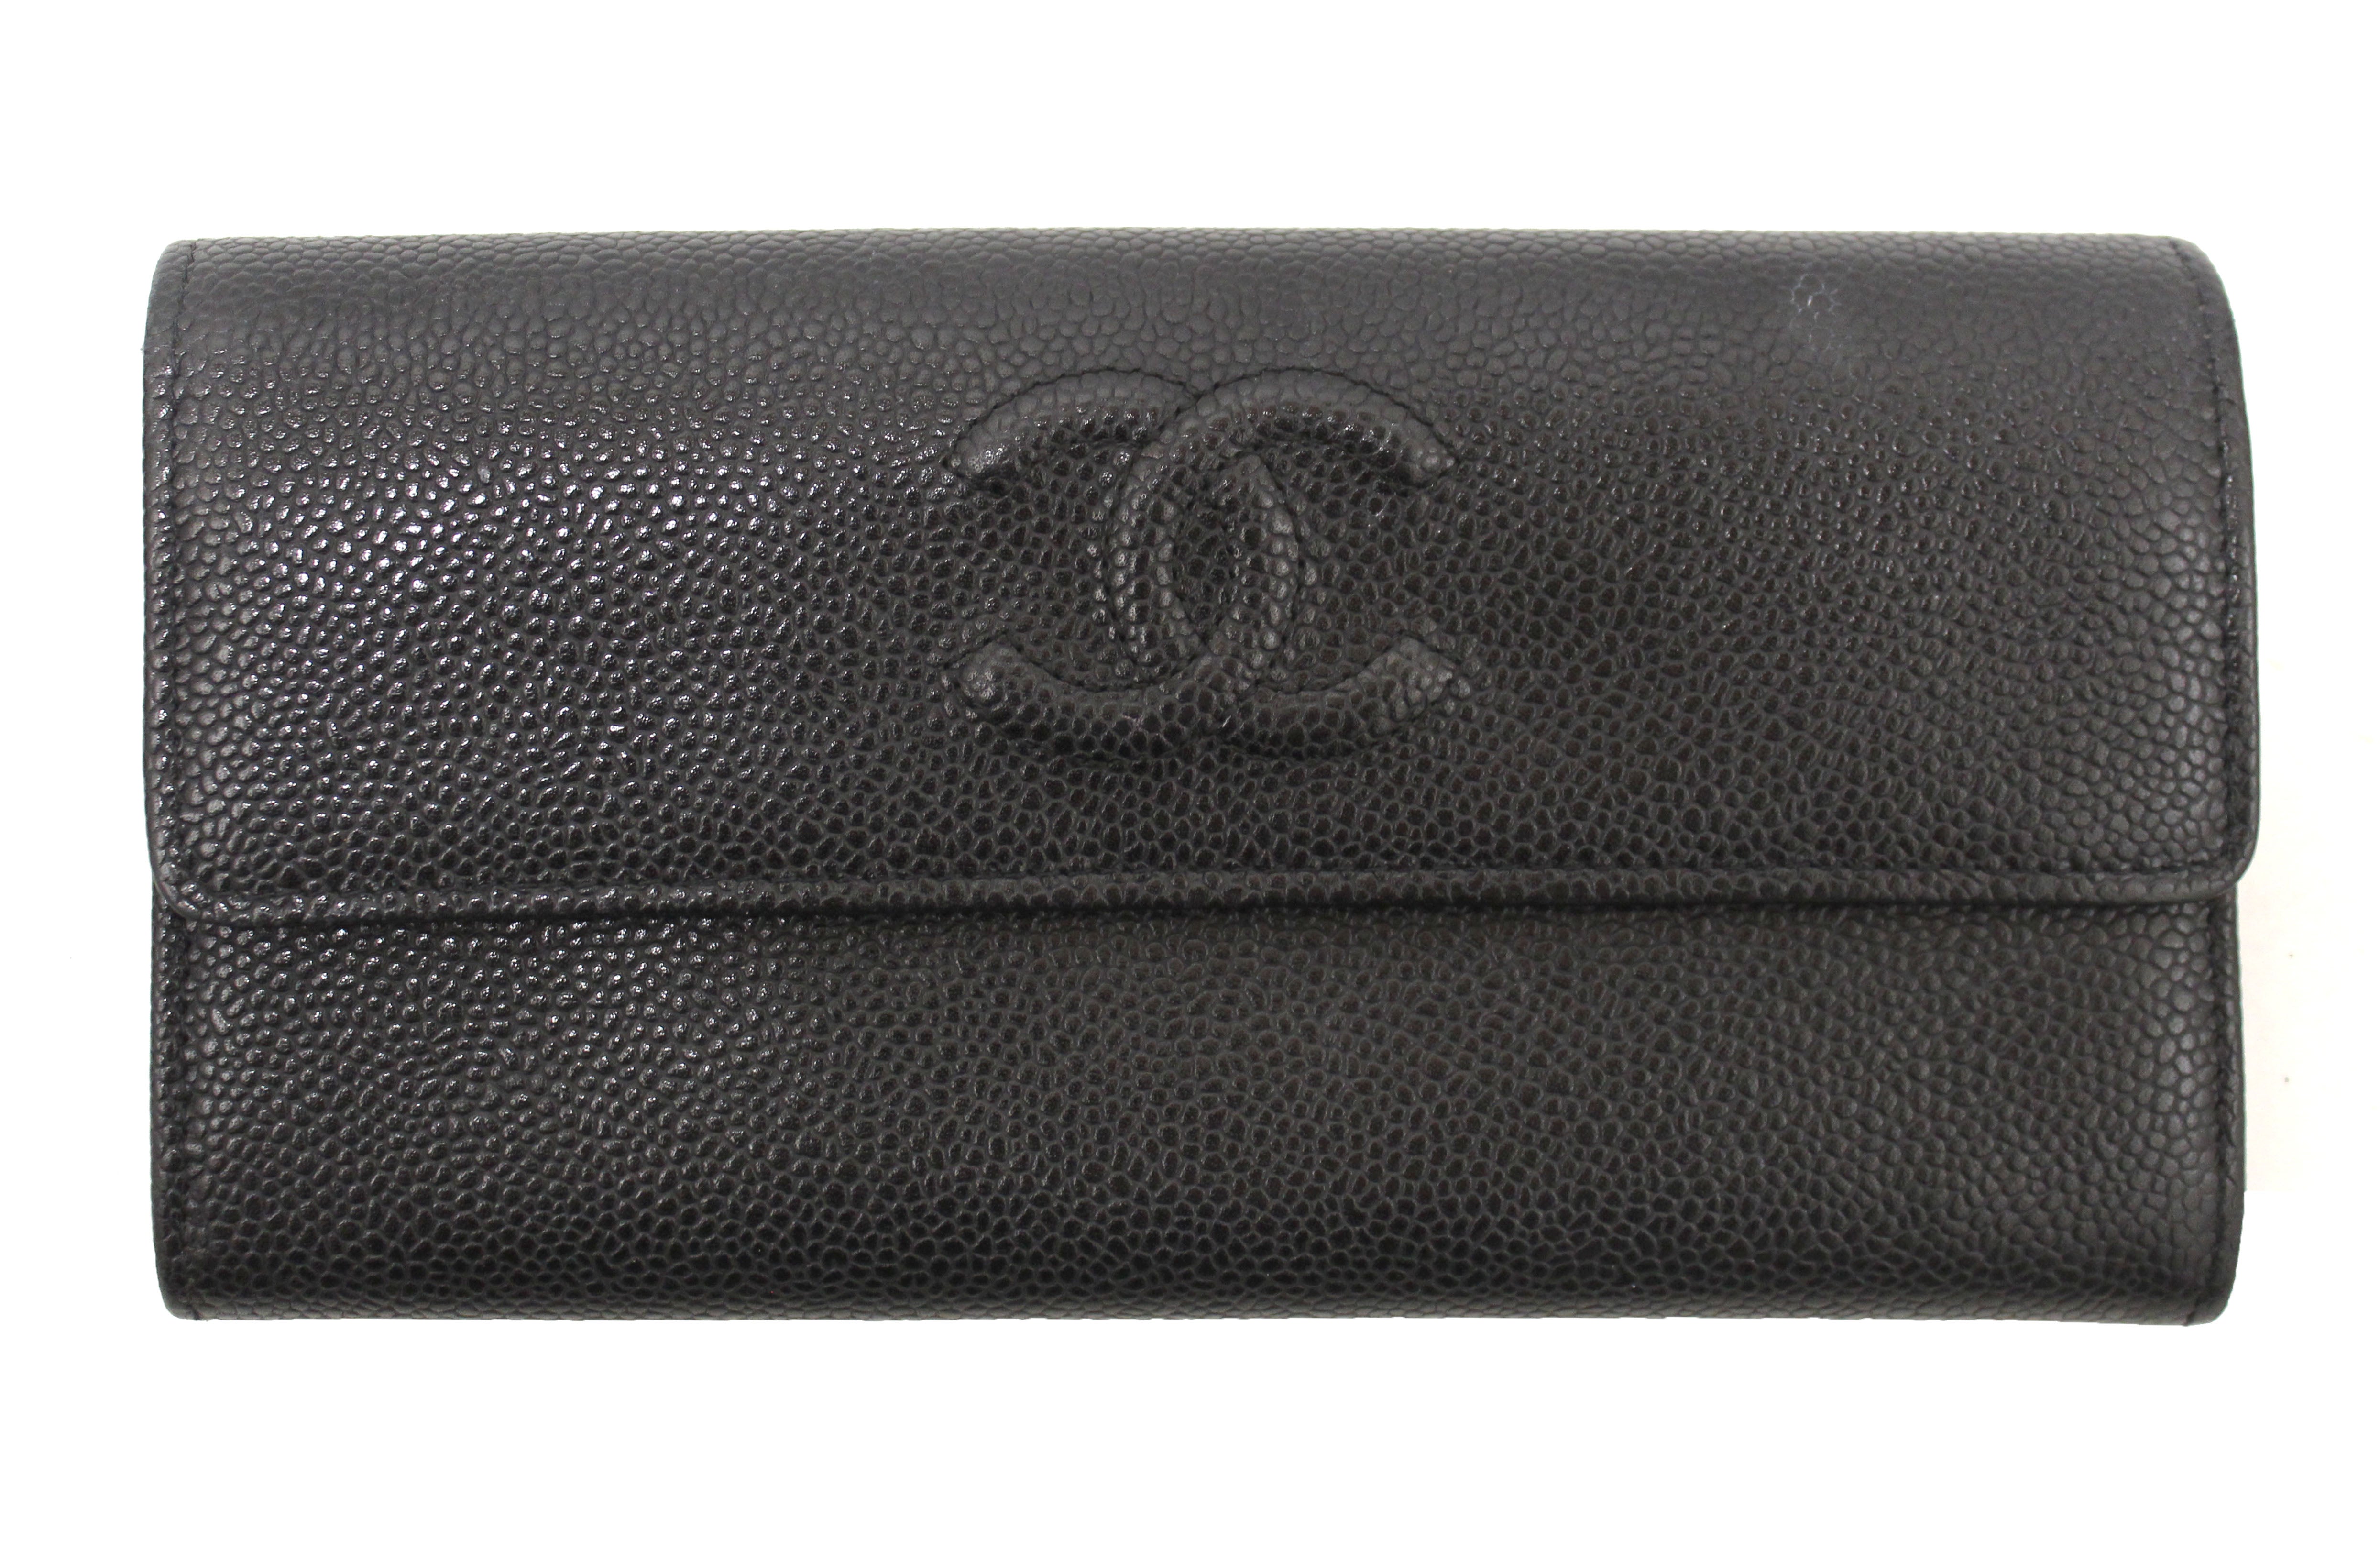 Authentic Chanel Black Caviar Leather CC Long Flap Wallet – Paris Station  Shop